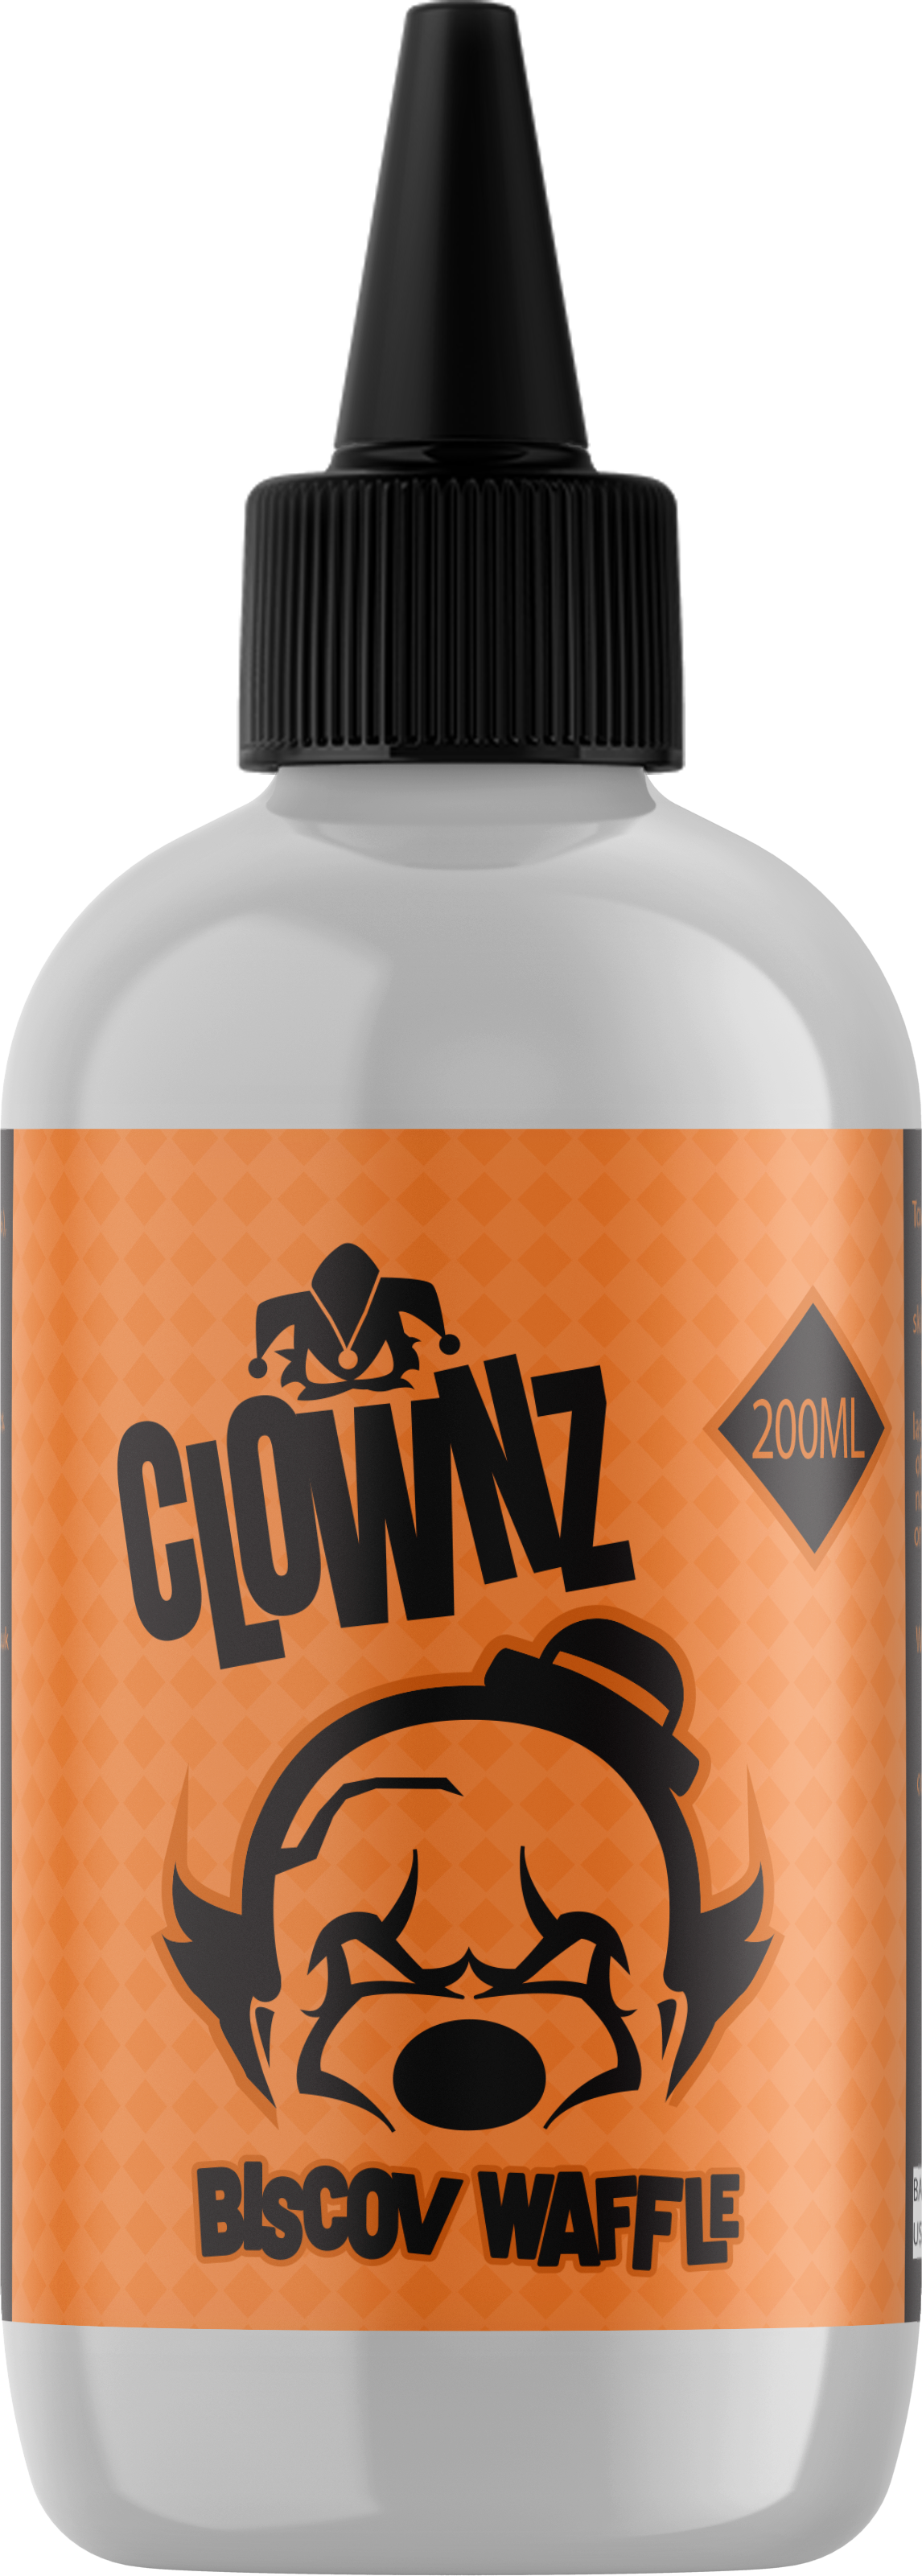 Clownz – Biscoff Waffle - 200ml